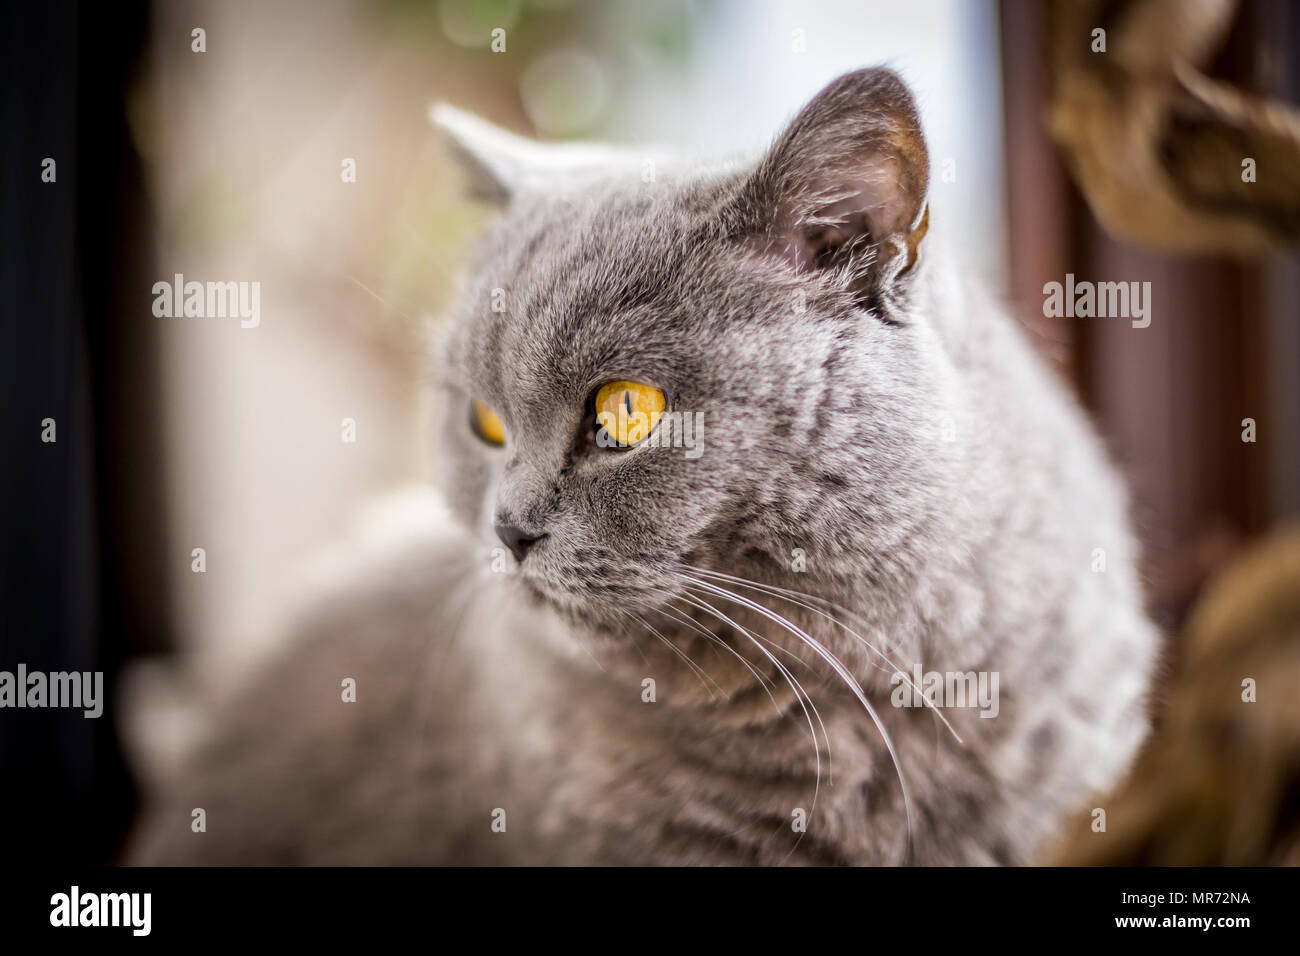 Ritratto di British Shorthair cat con blu e grigio pelliccia. Profondità di campo. Foto Stock